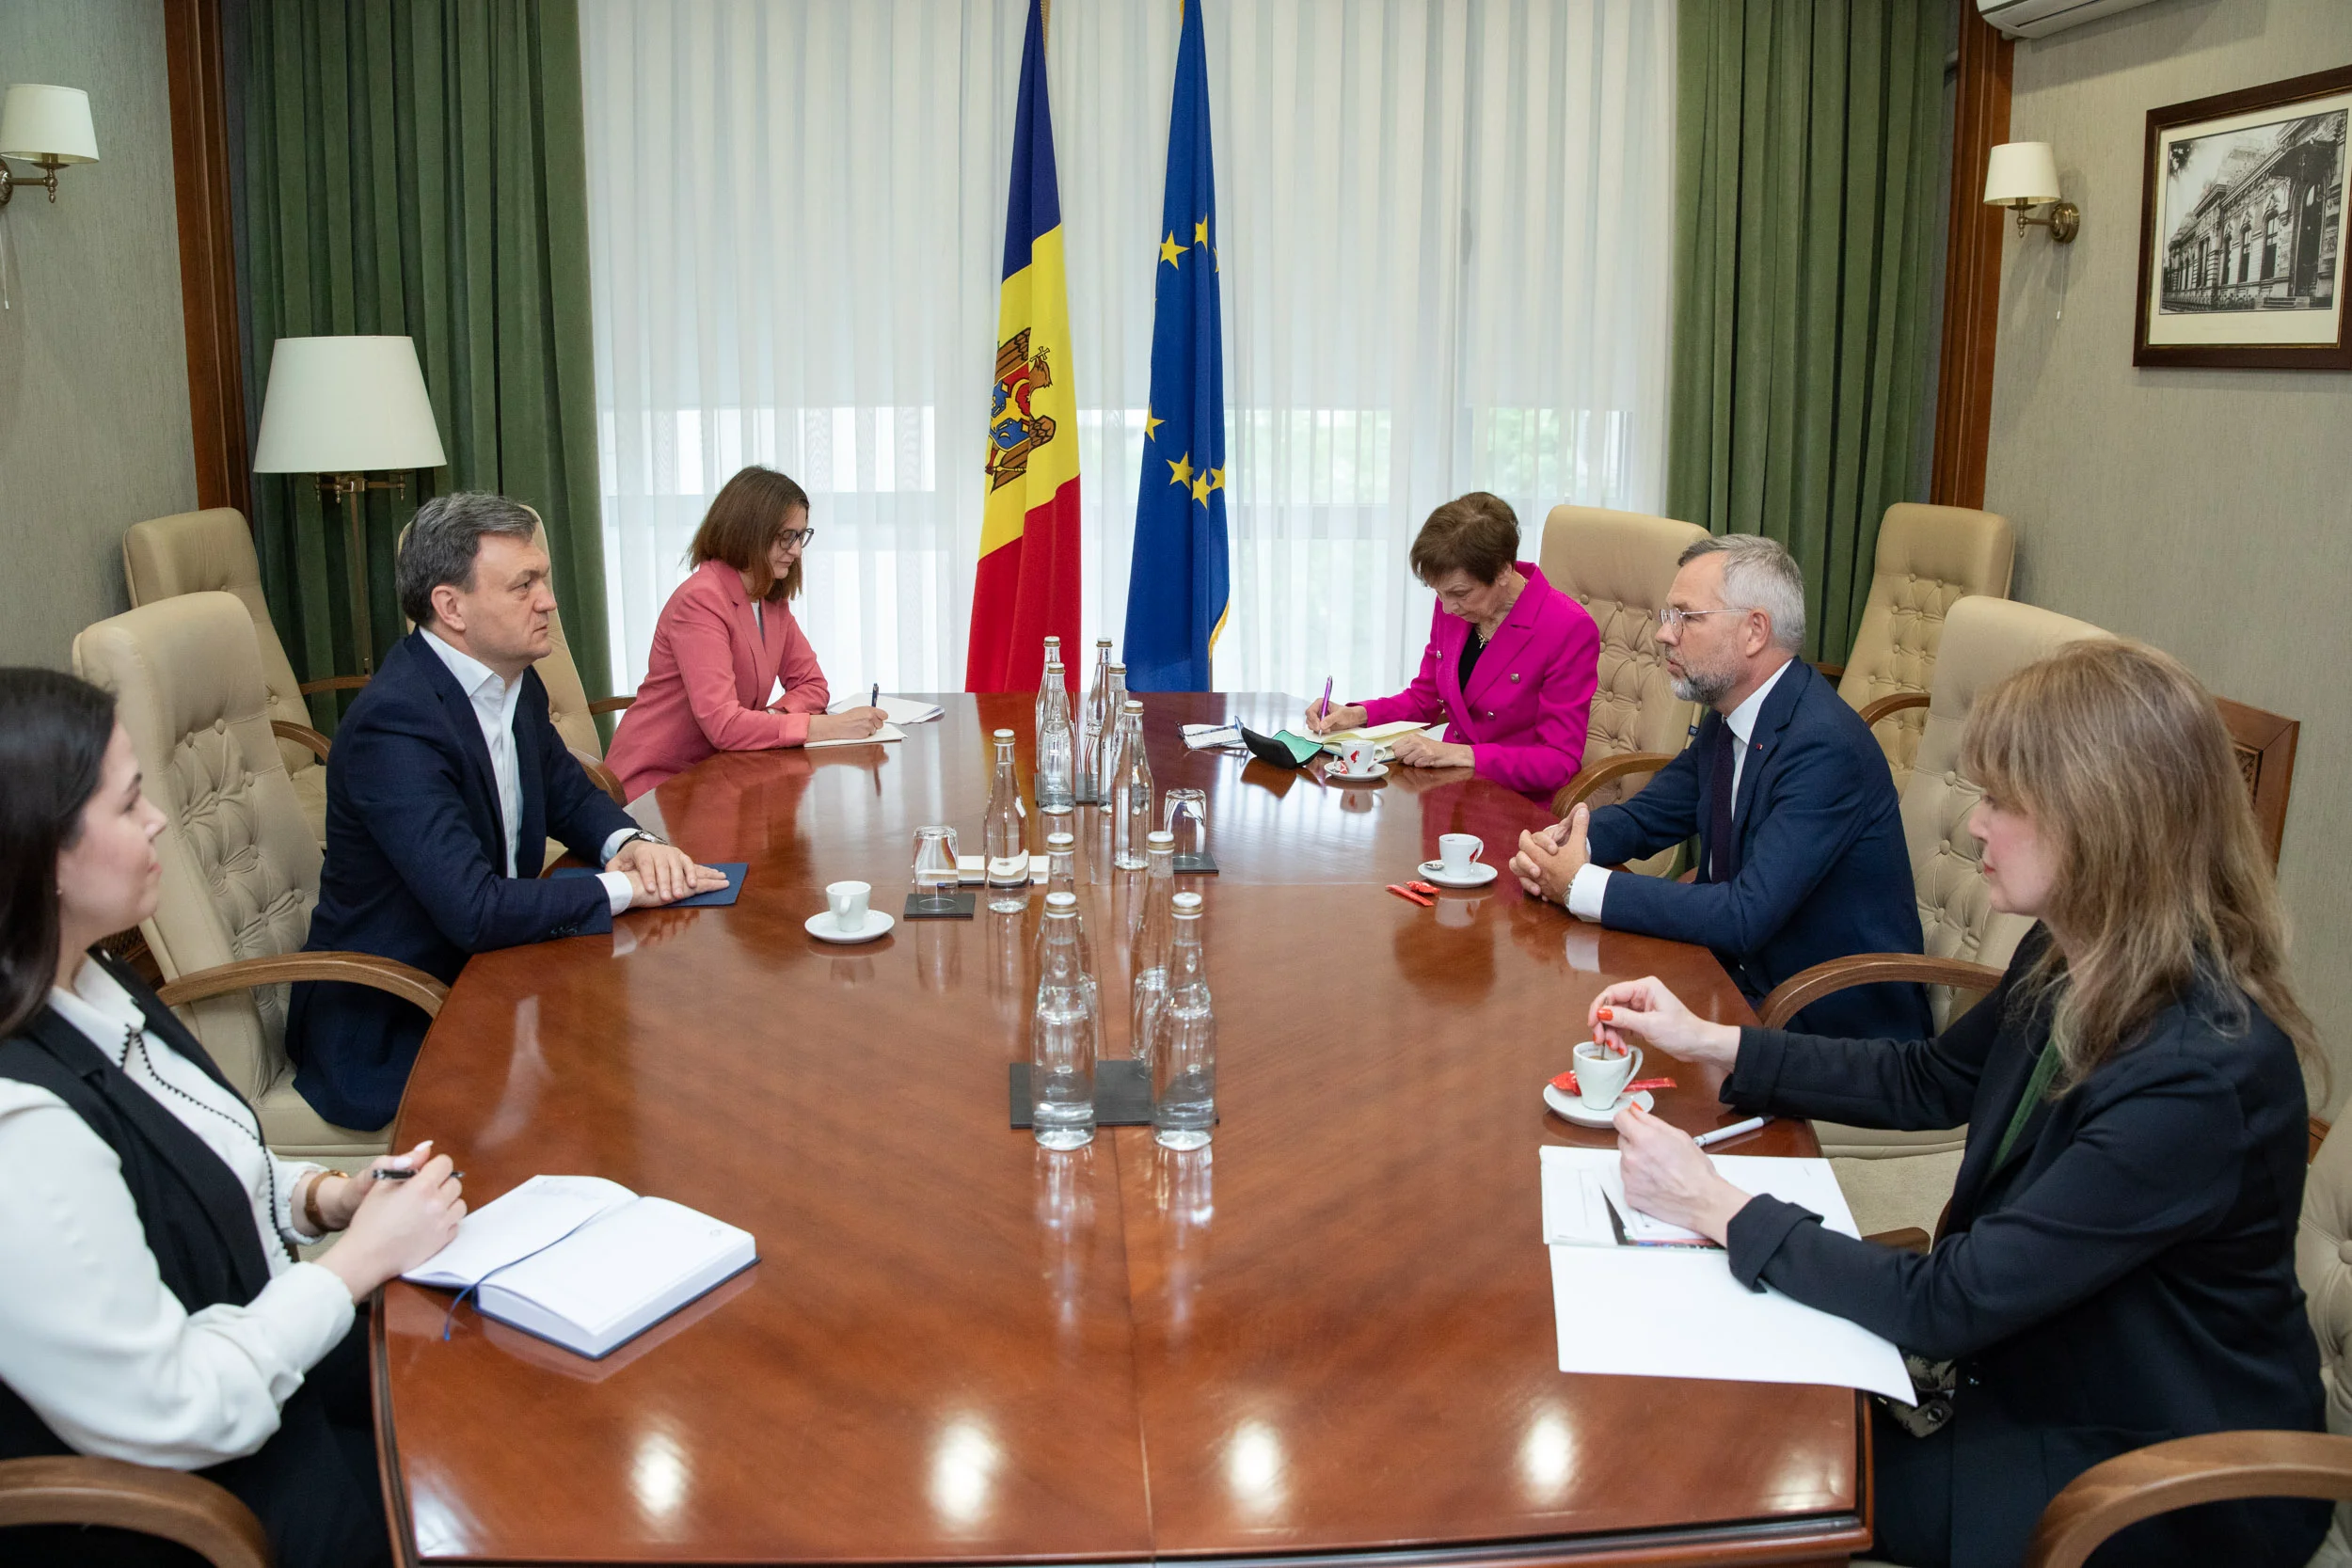 Recean: Republica Moldova este țara oportunităților, Germania va rămâne alături pentru a le valorifica